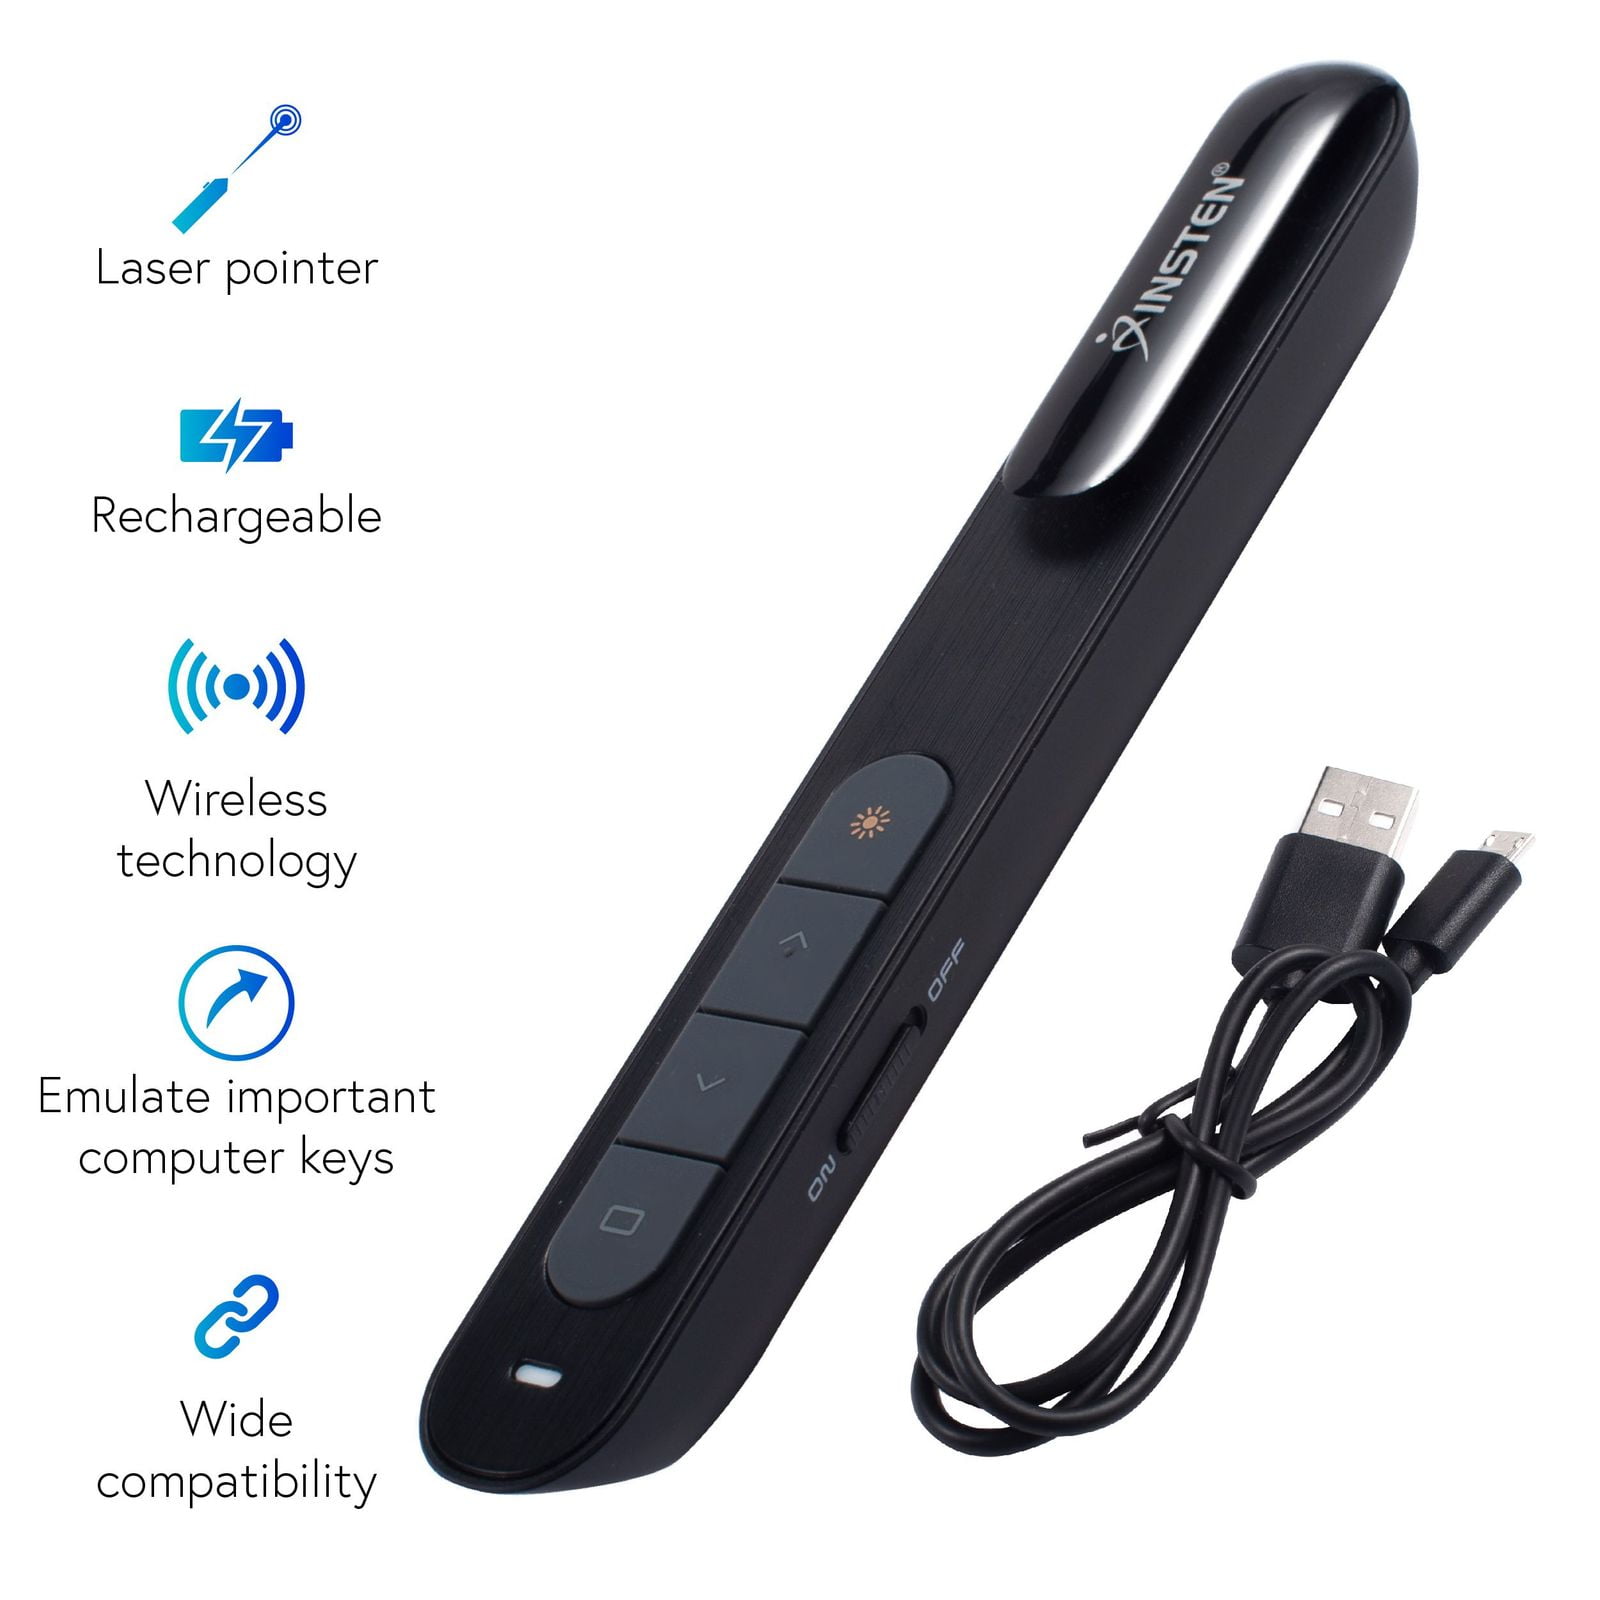 Power point Presentation Remote Wireless USB PPT Presenter Laser Pointer Clicker 